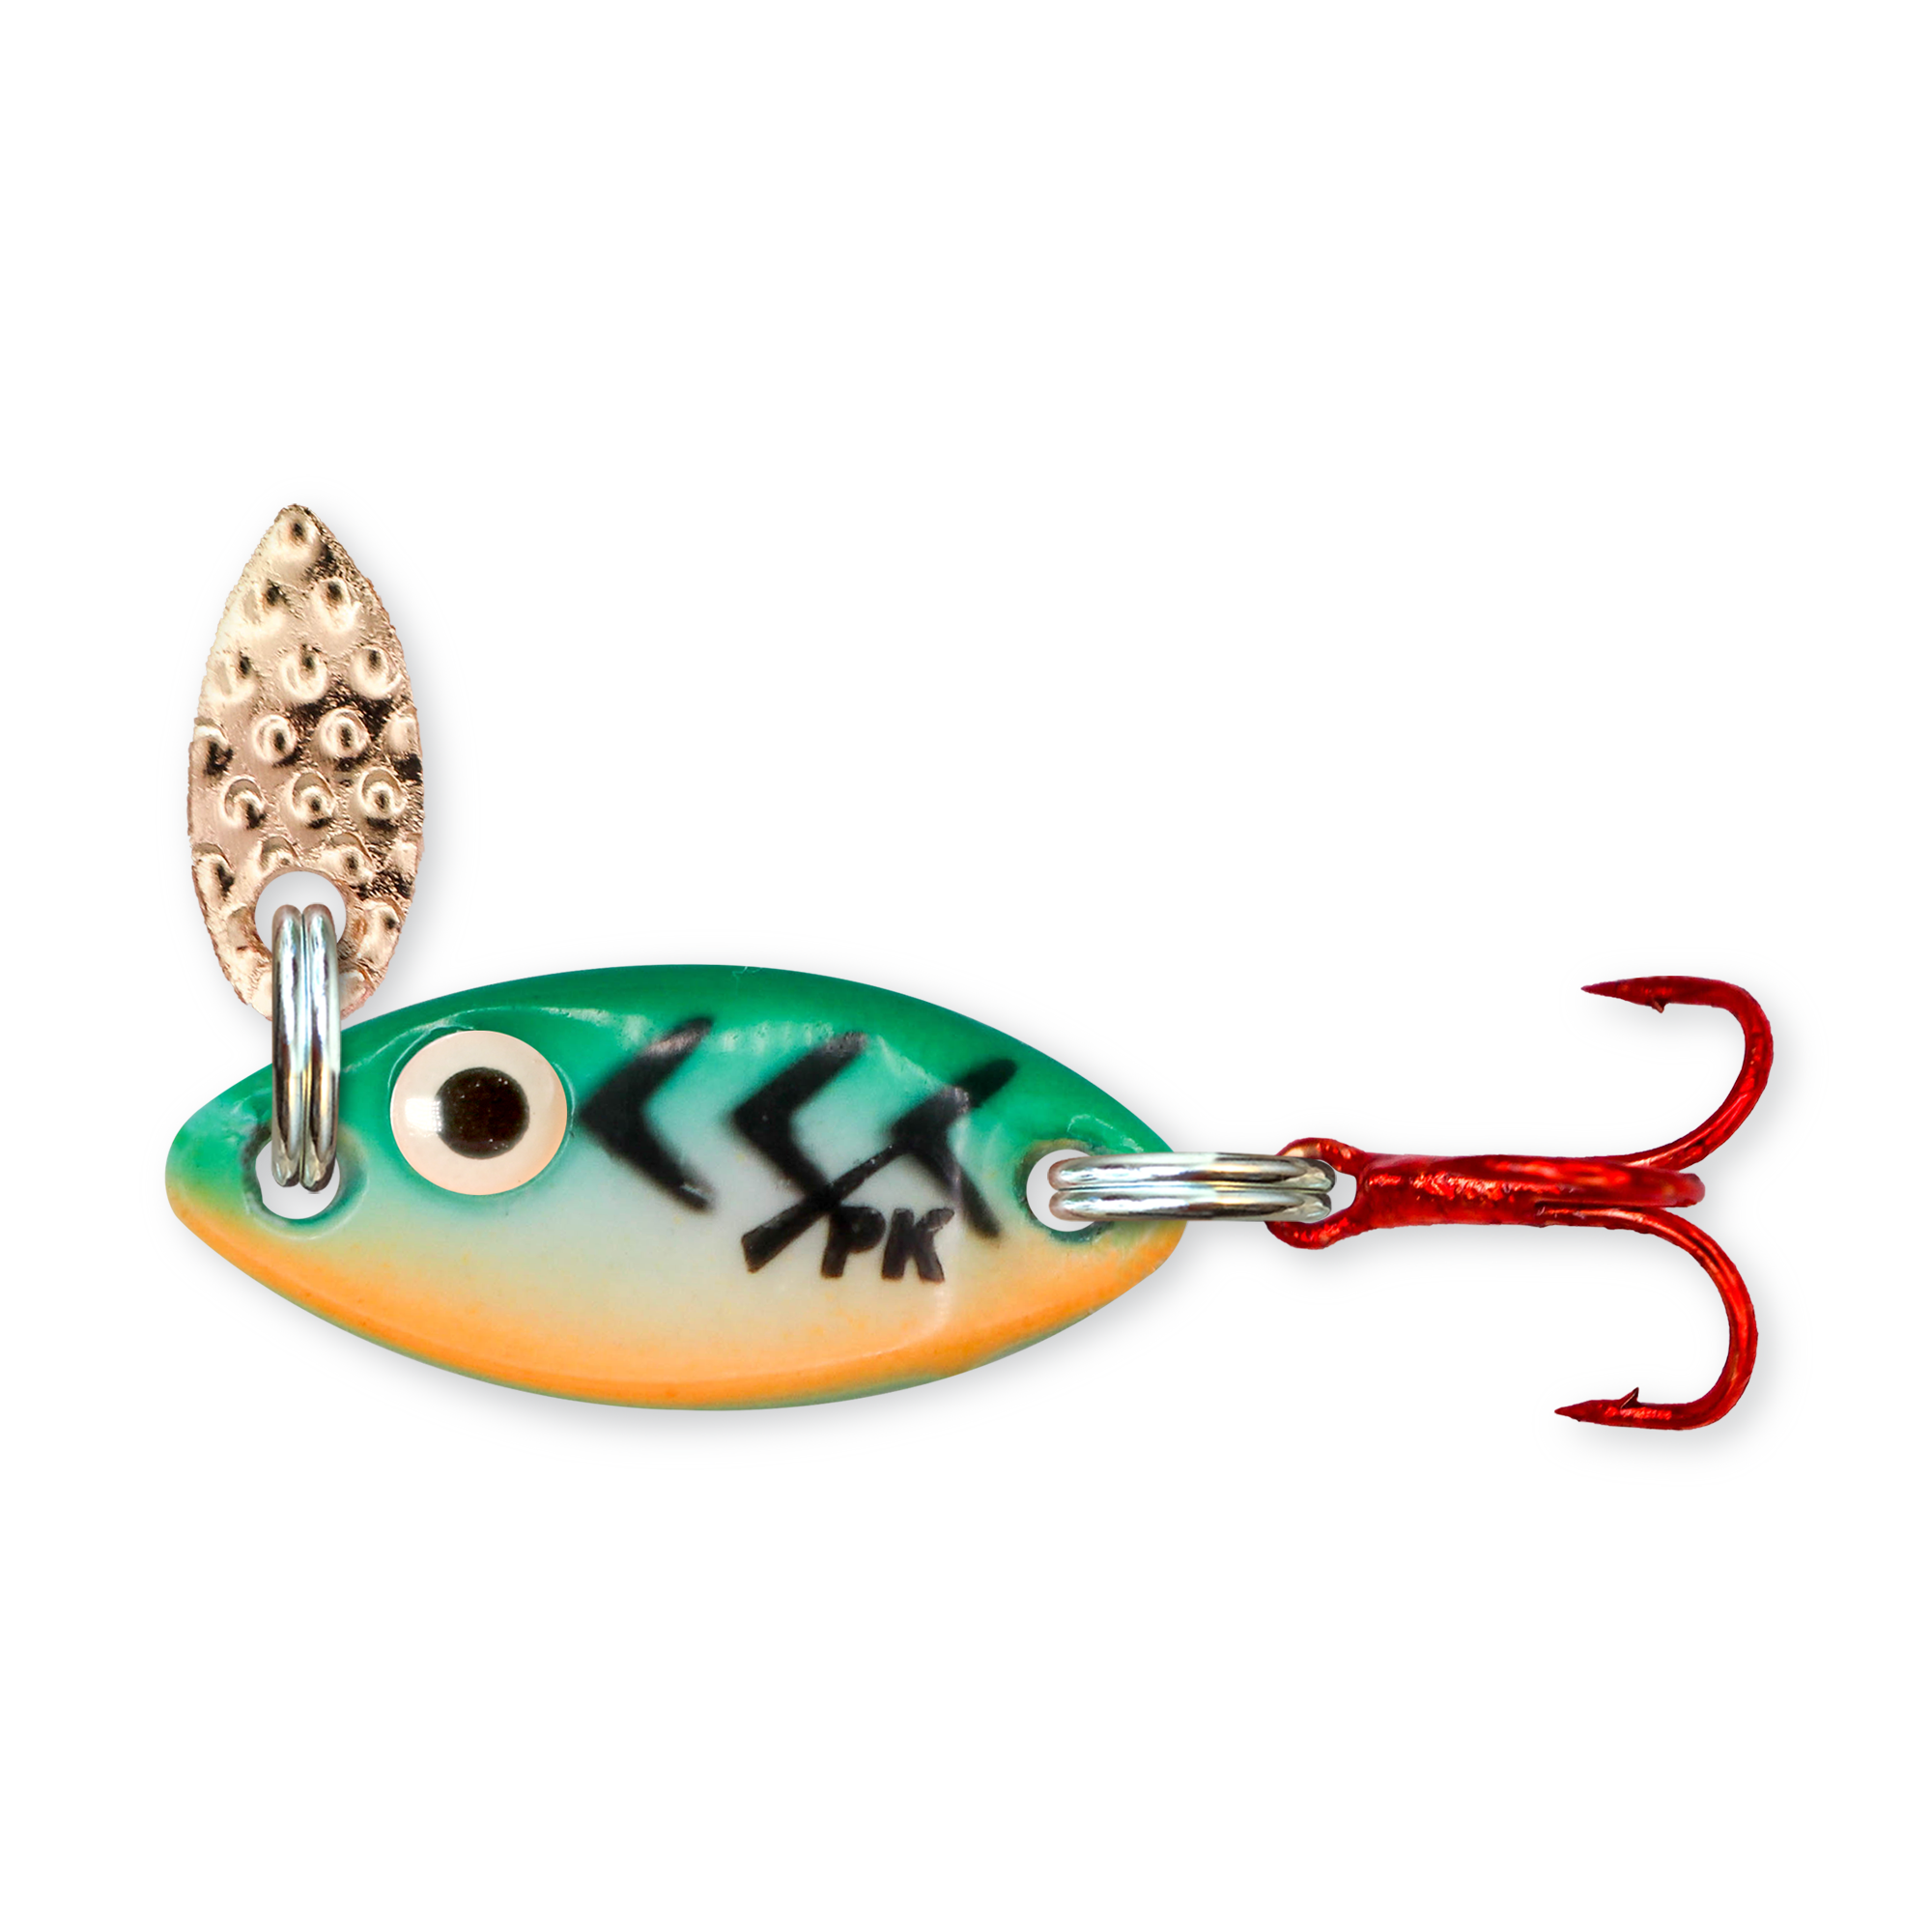 PK Spoon Kit - Ice Fishing Spoons Assortment – PK Lures